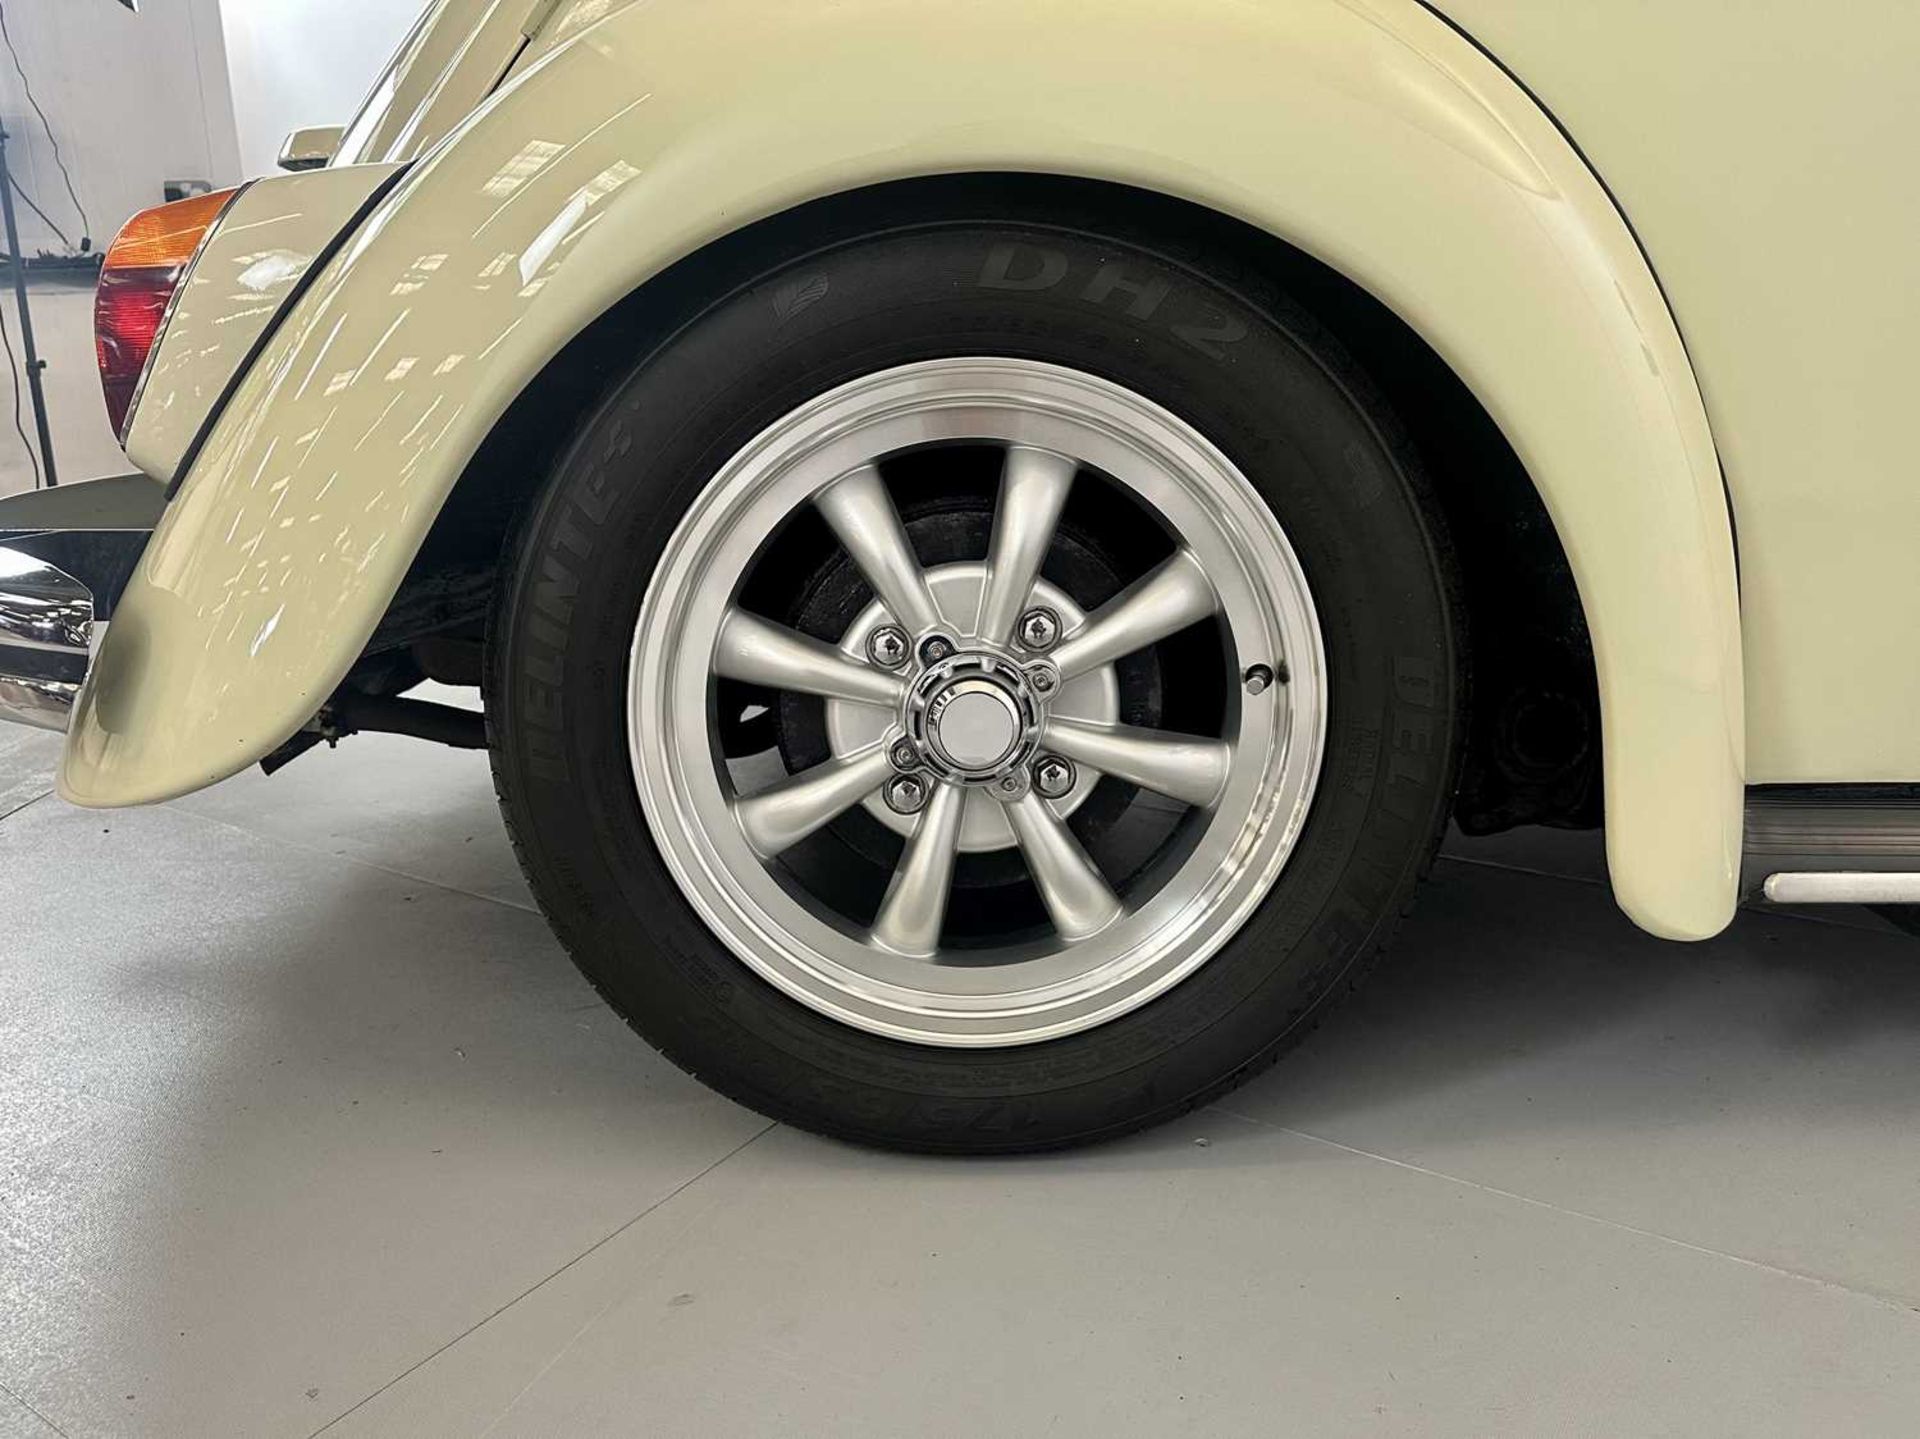 1971 Volkswagen Beetle - Image 15 of 30